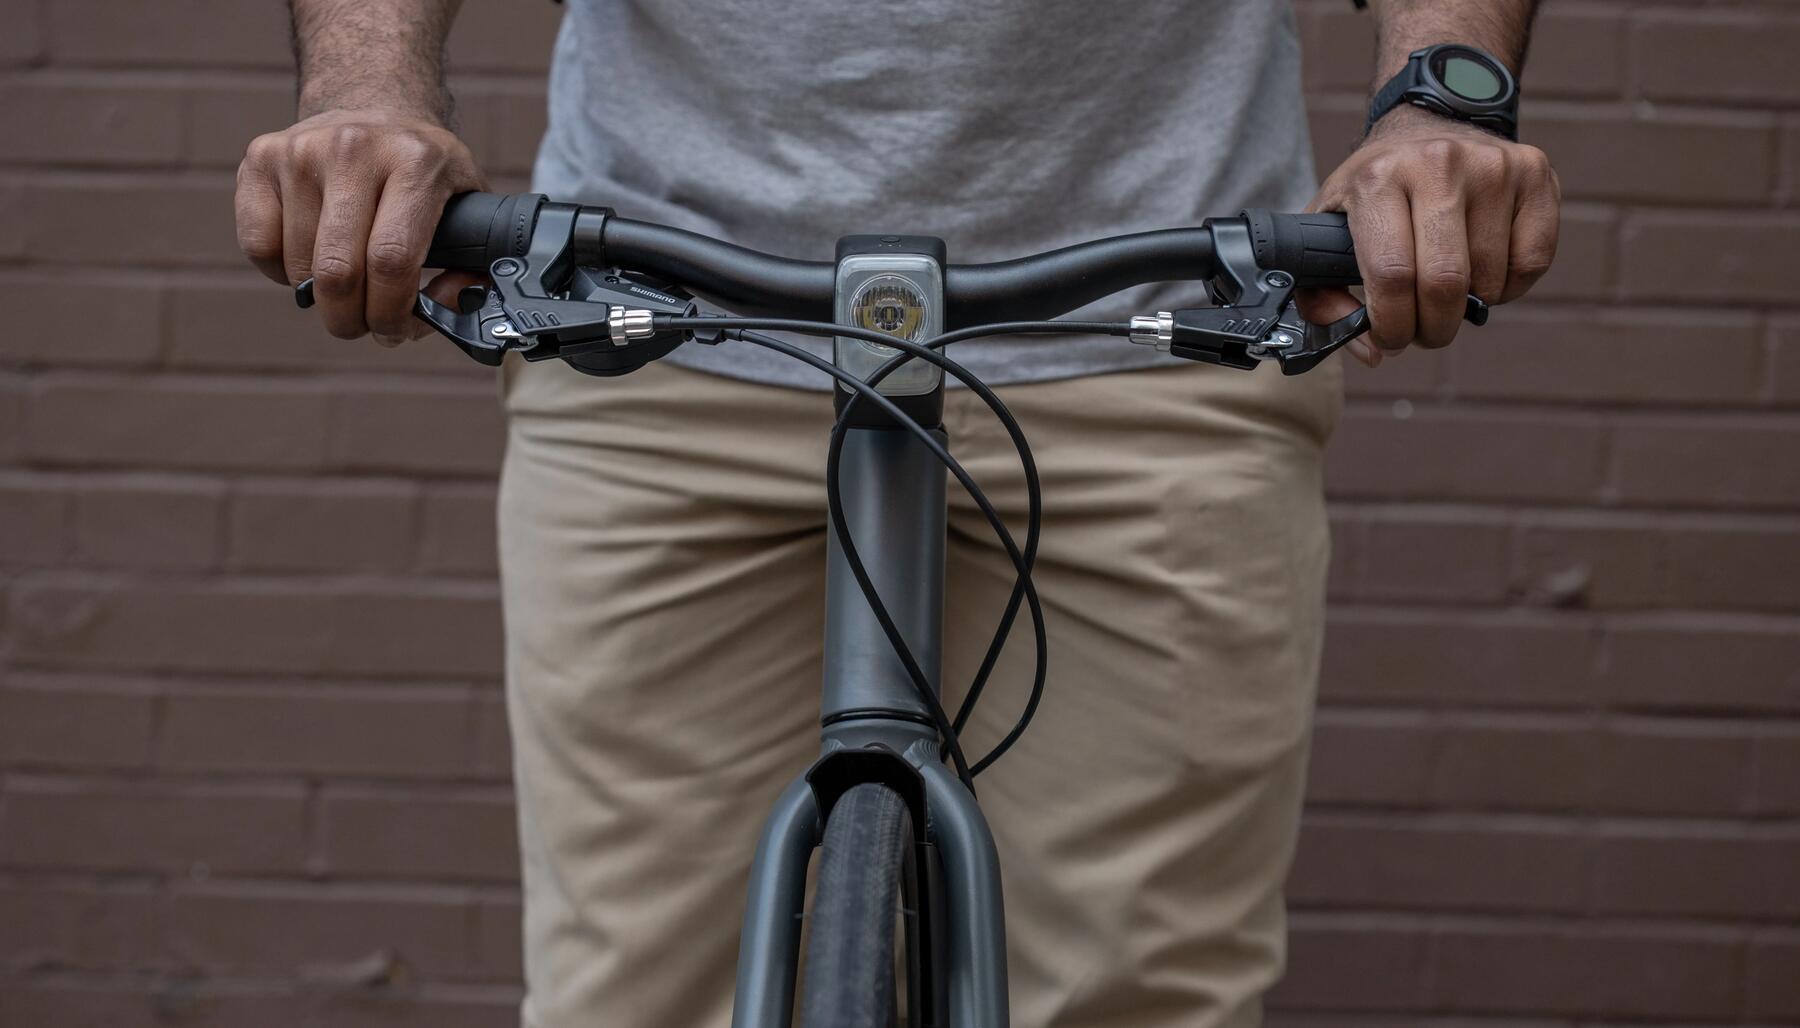 Hoe kan je fietsdiefstal voorkomen?